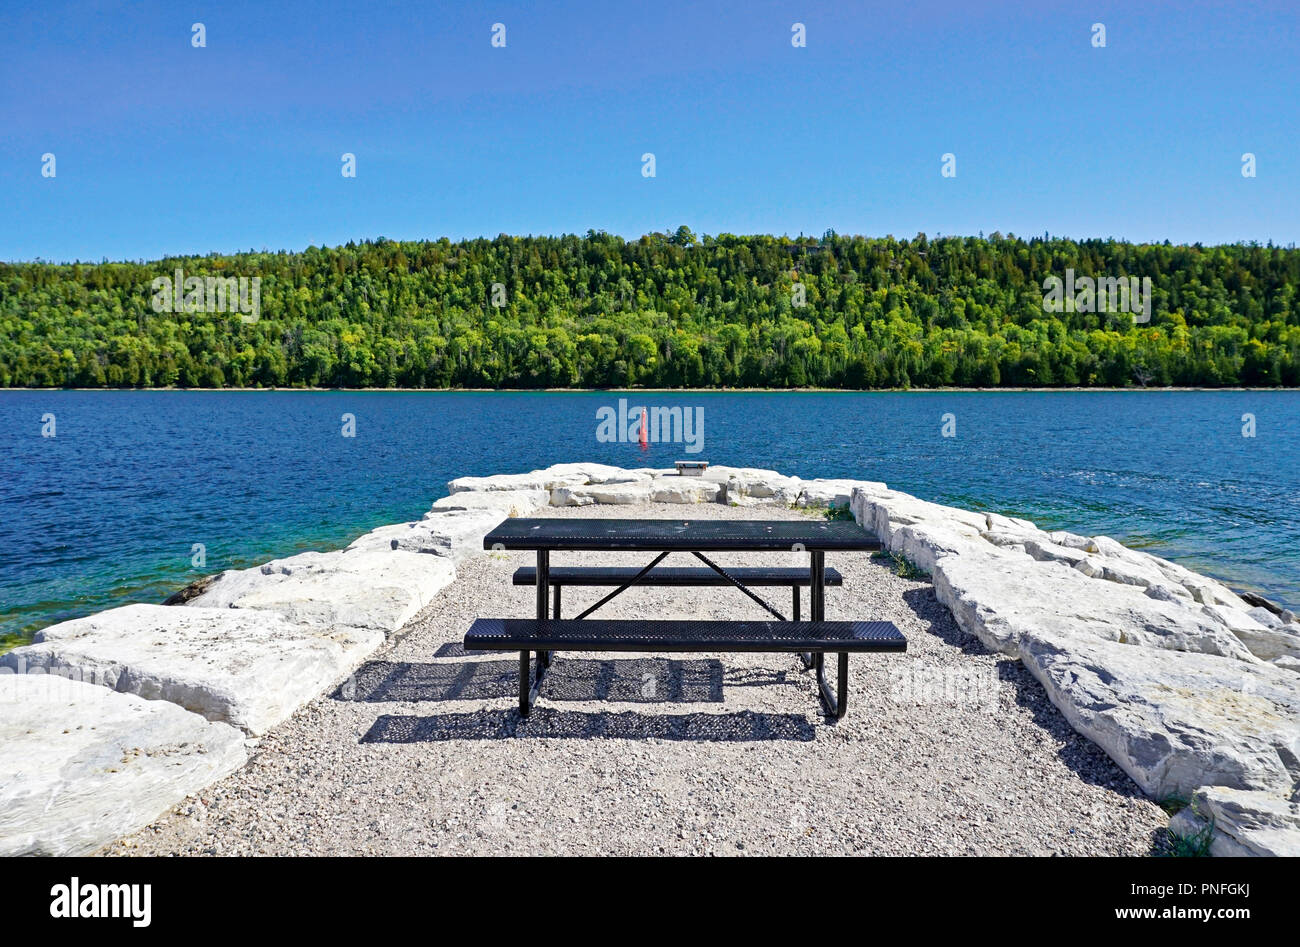 Une forêt luxuriante et d'un bleu profond l'eau et le ciel au-dessus d'une table de pique-nique sur la jetée en pierre à Gore Bay, île Manitoulin, Ontario, Canada Banque D'Images